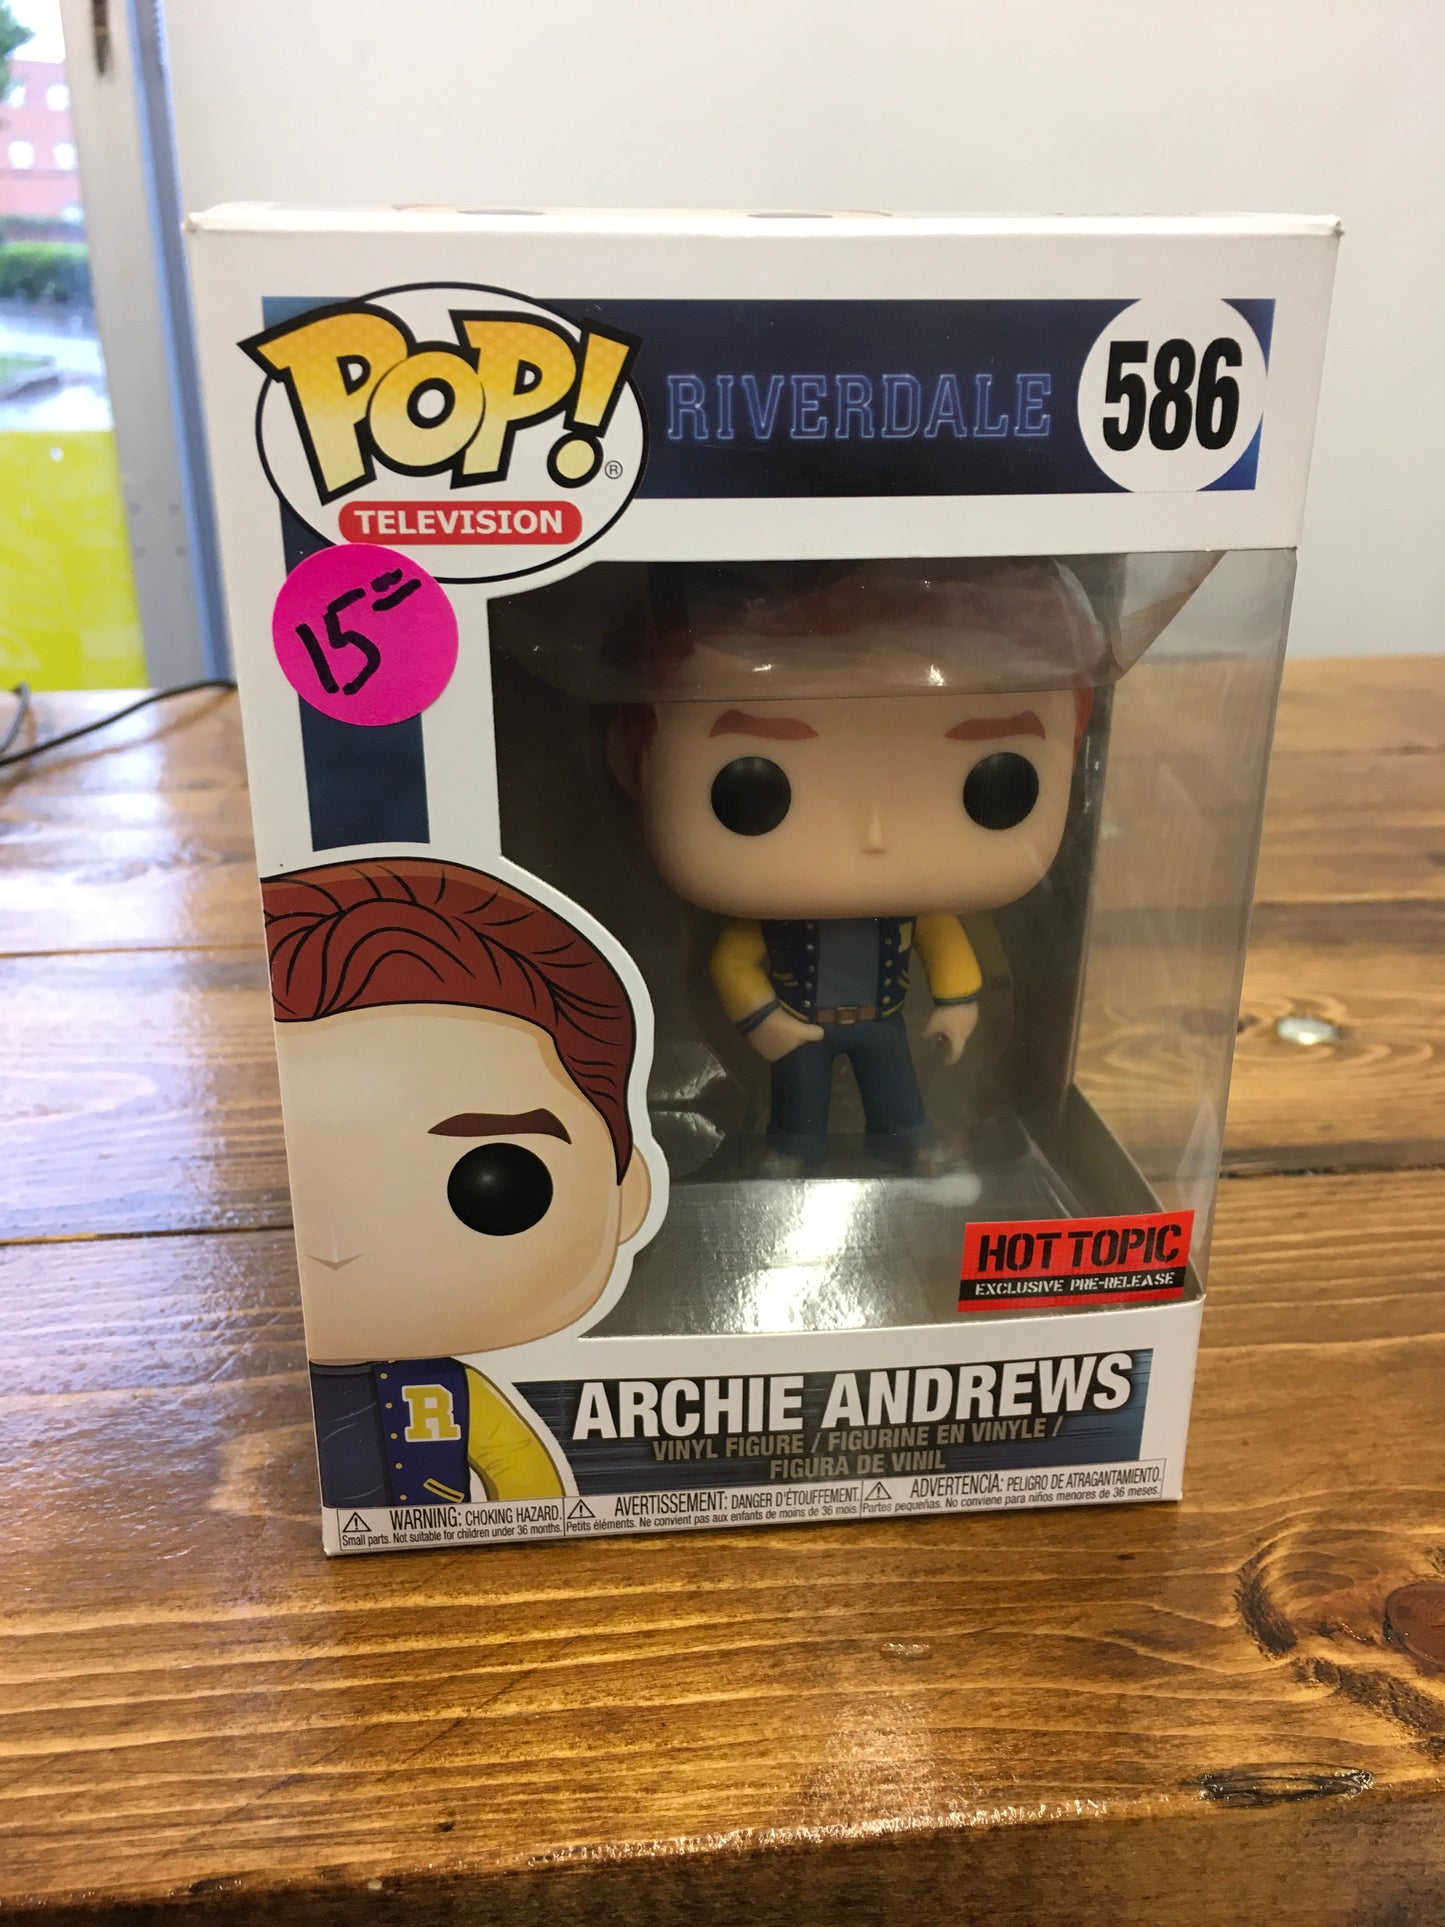 Riverdale Archie Andrews Funko Pop! Vinyl figure 2020